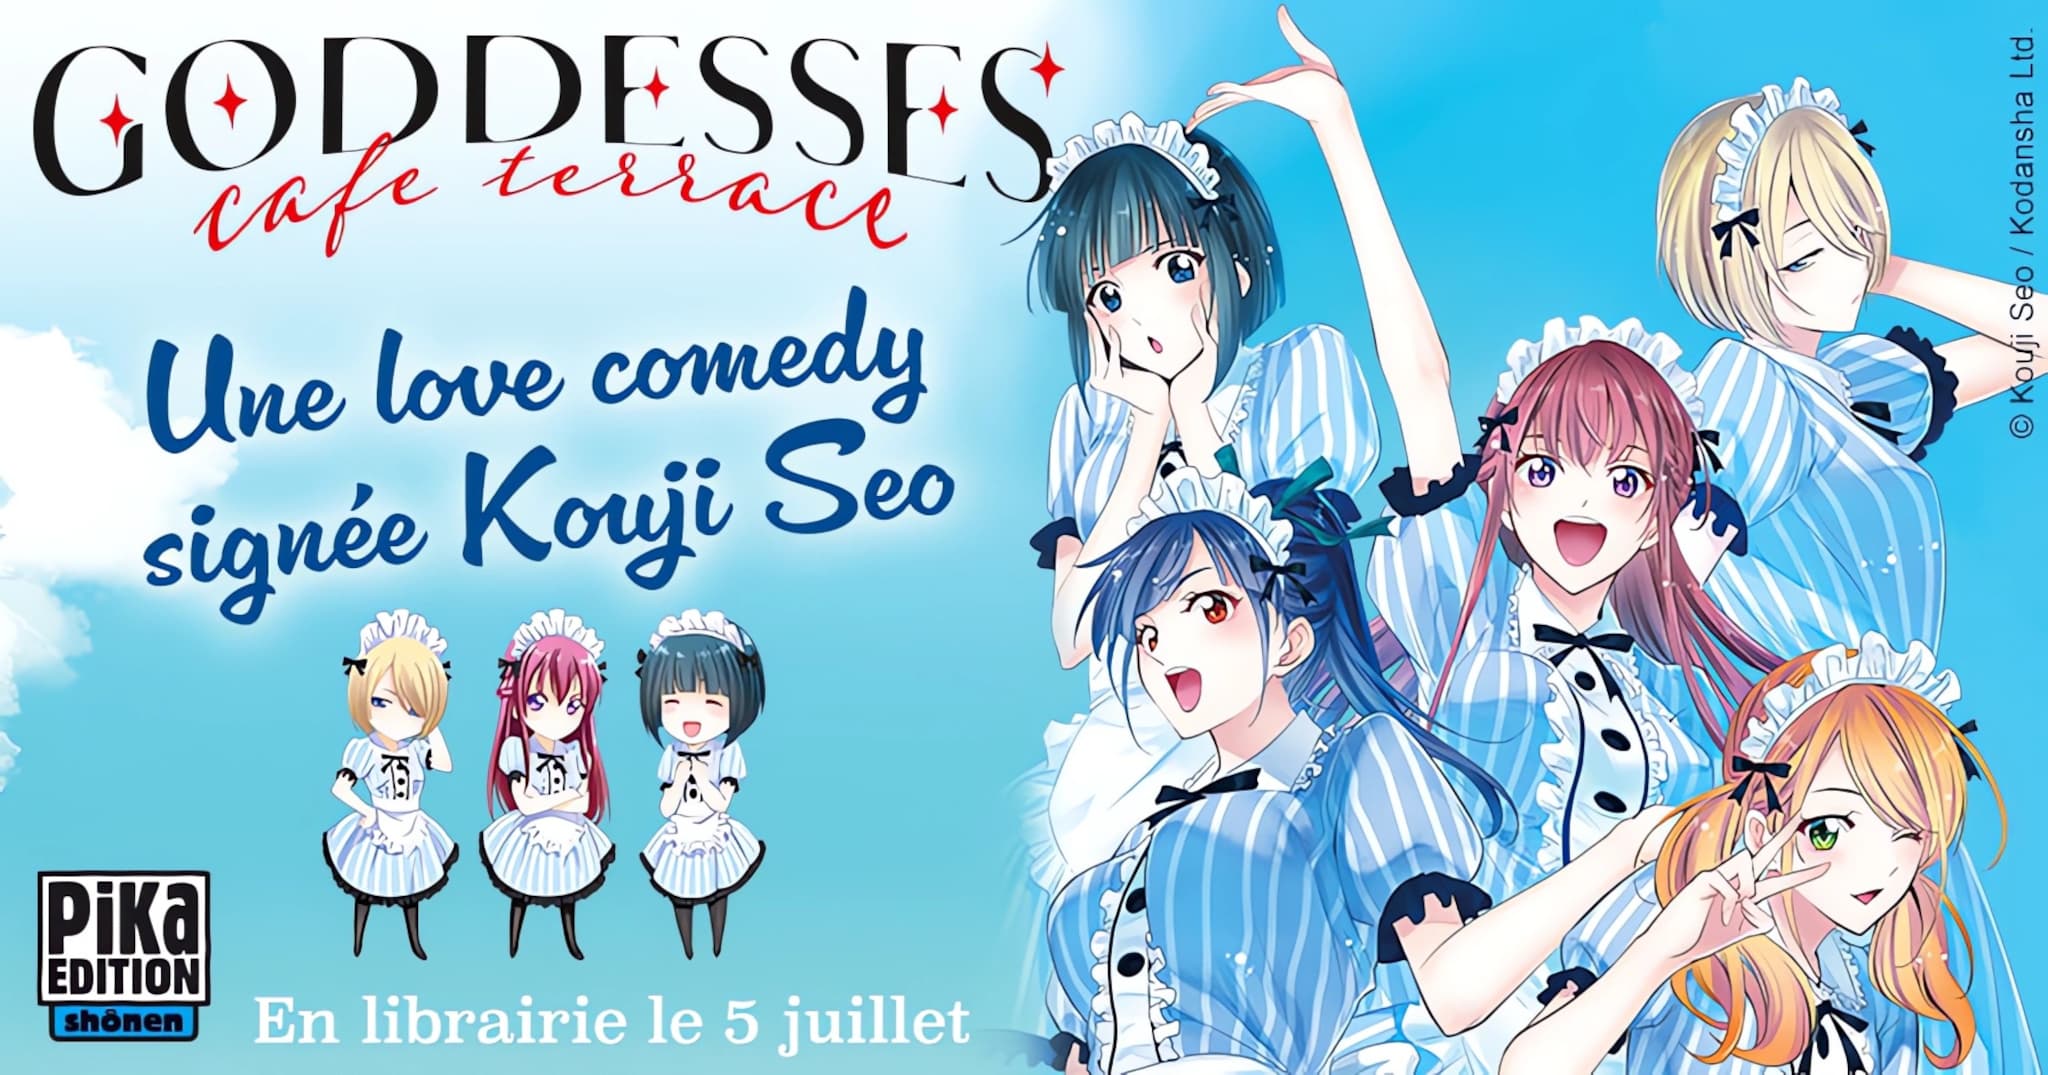 Annonce de la date de sortie en France du manga Goddesses Cafe Terrace aux éditions Pika